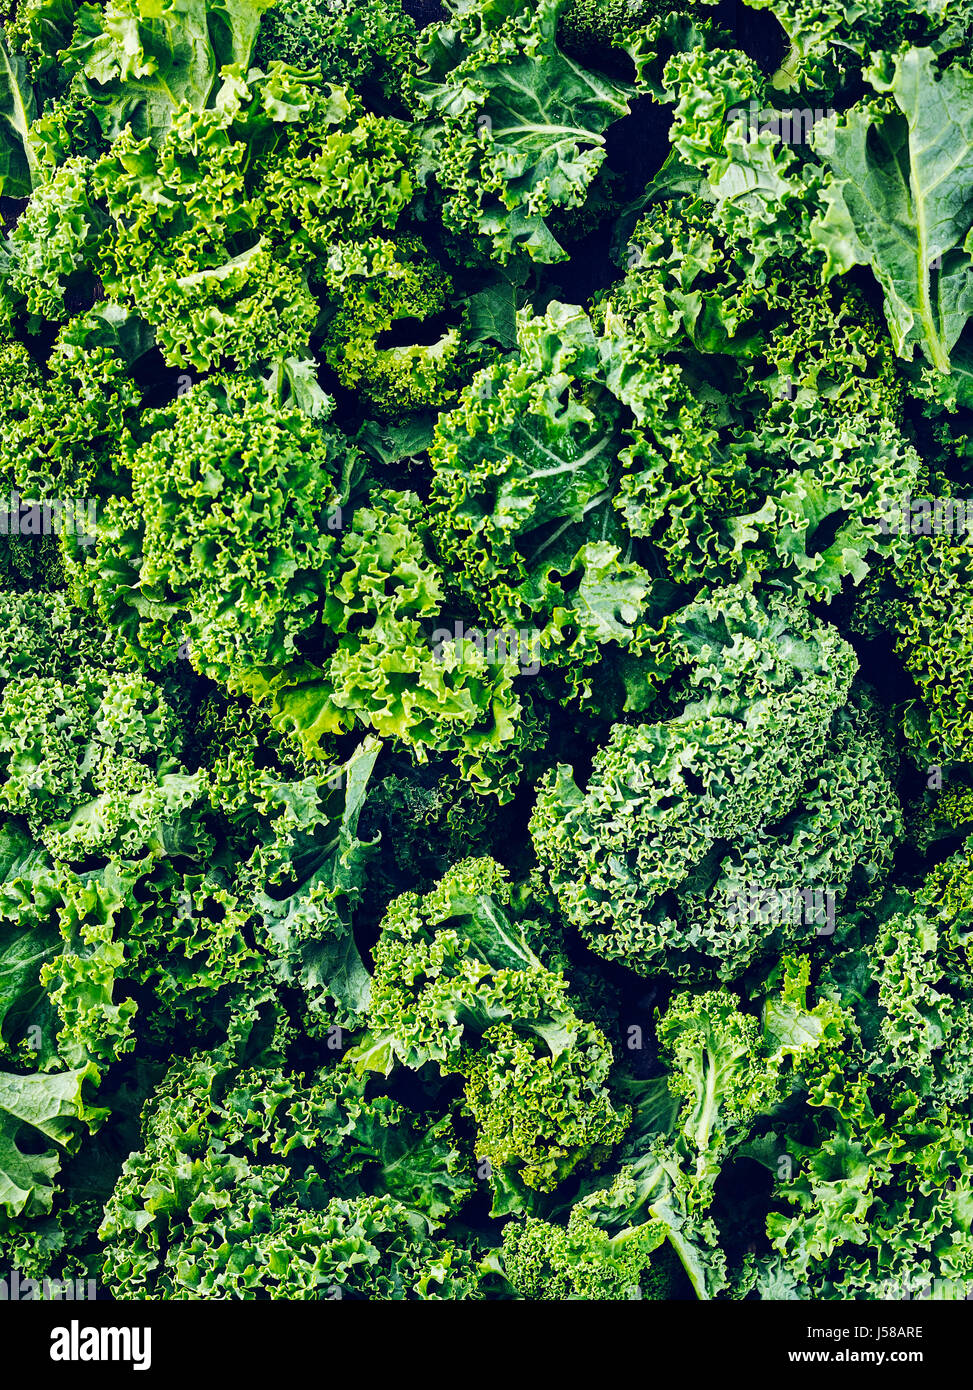 Kale close up Stock Photo